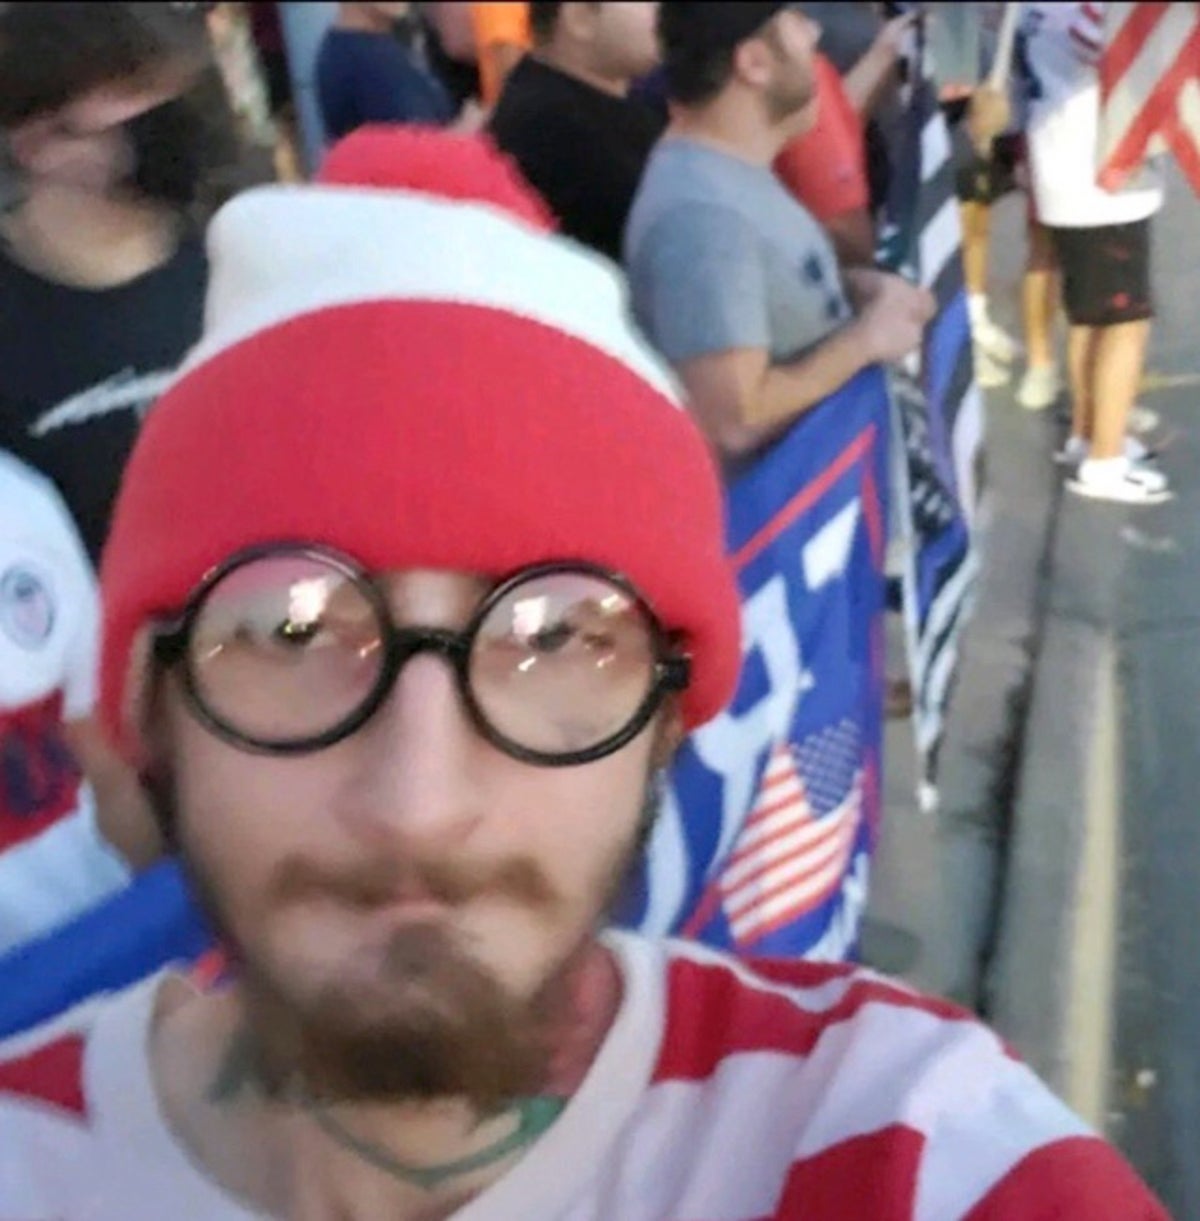 Highland Park'ın meraklısı Robert Crimo, Waldo Nerede kılığında Trump mitingine gitti